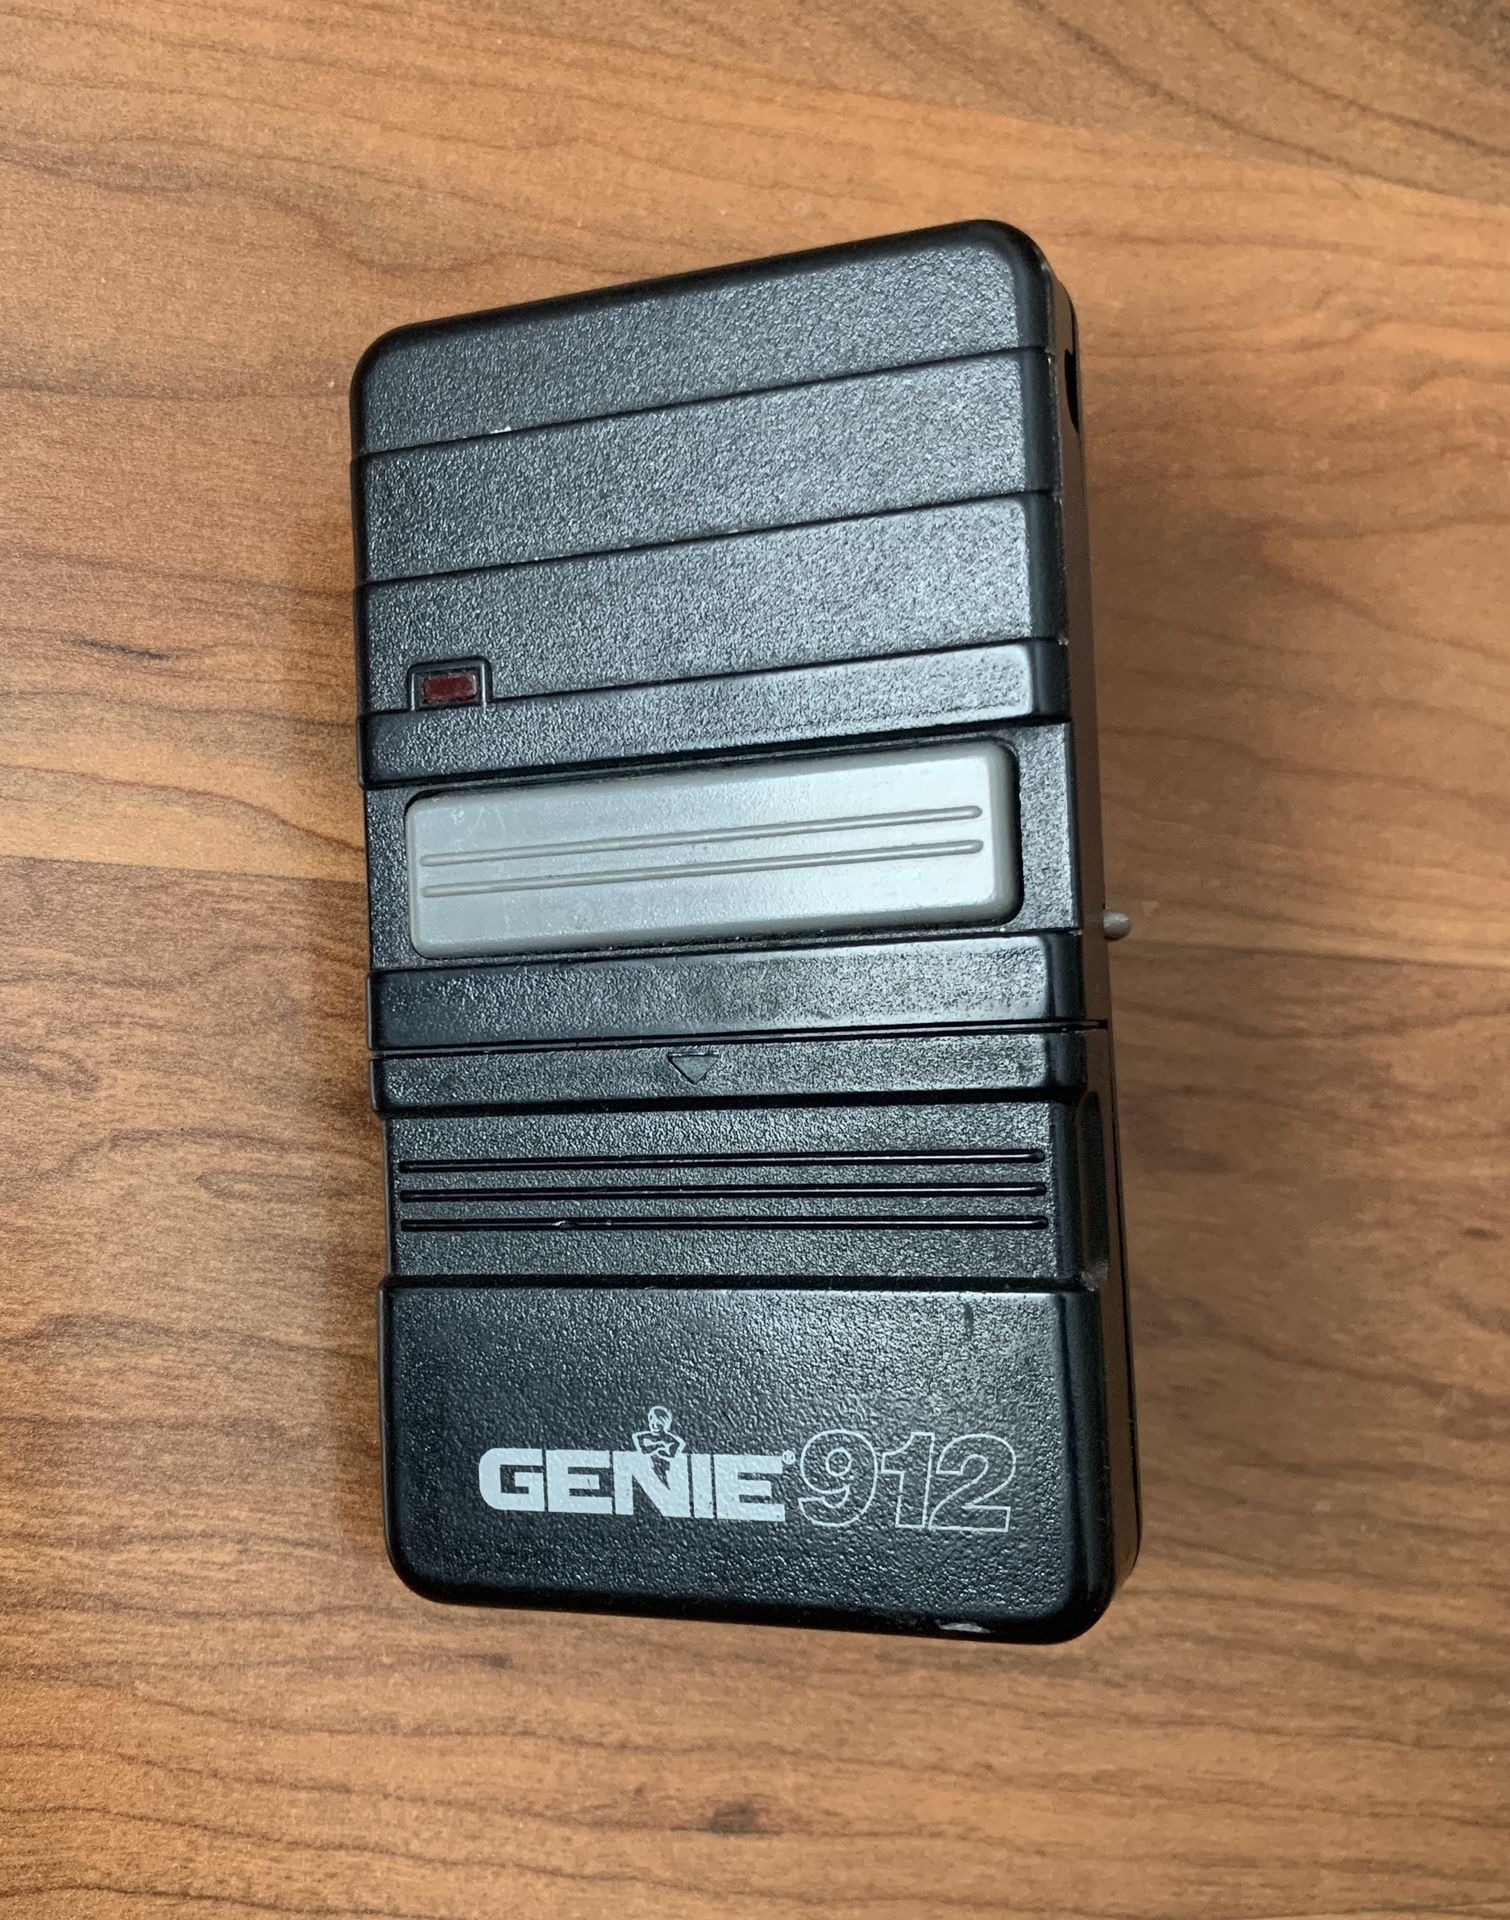 Genie GT-912 Garage Door Remote